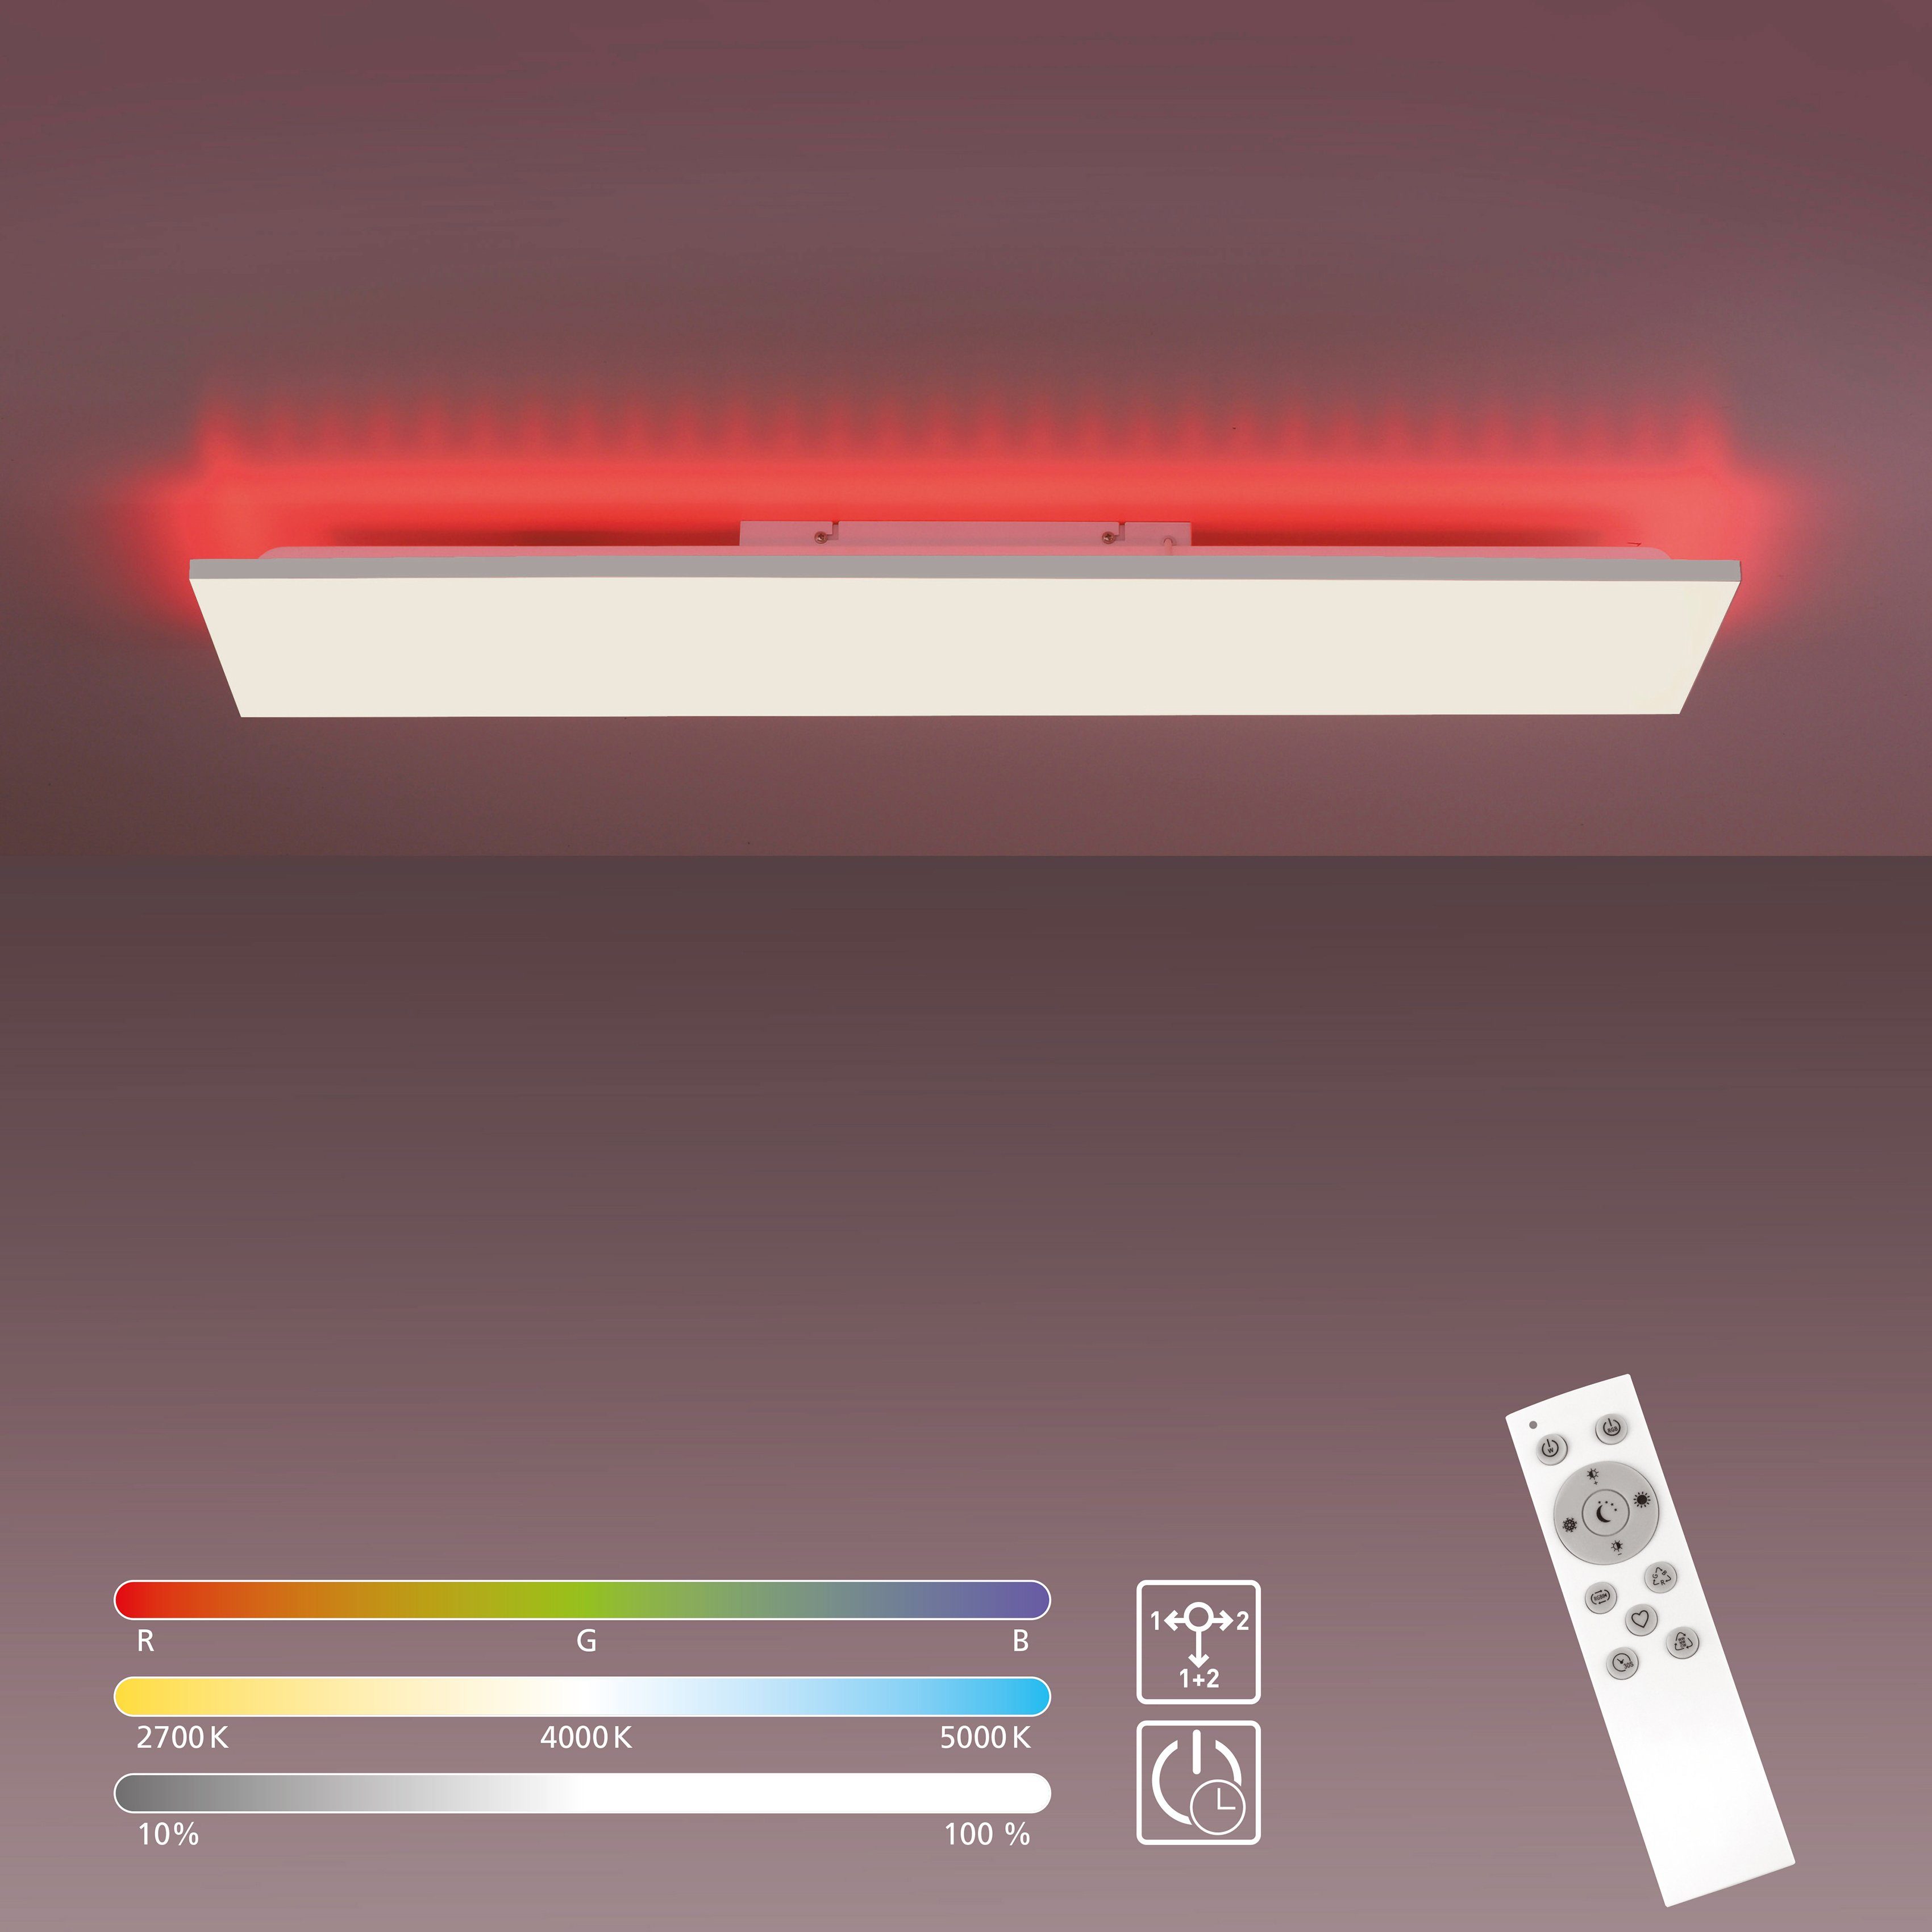 Eckige LED Deckenleuchten mit Dimmfunktion kaufen | OTTO